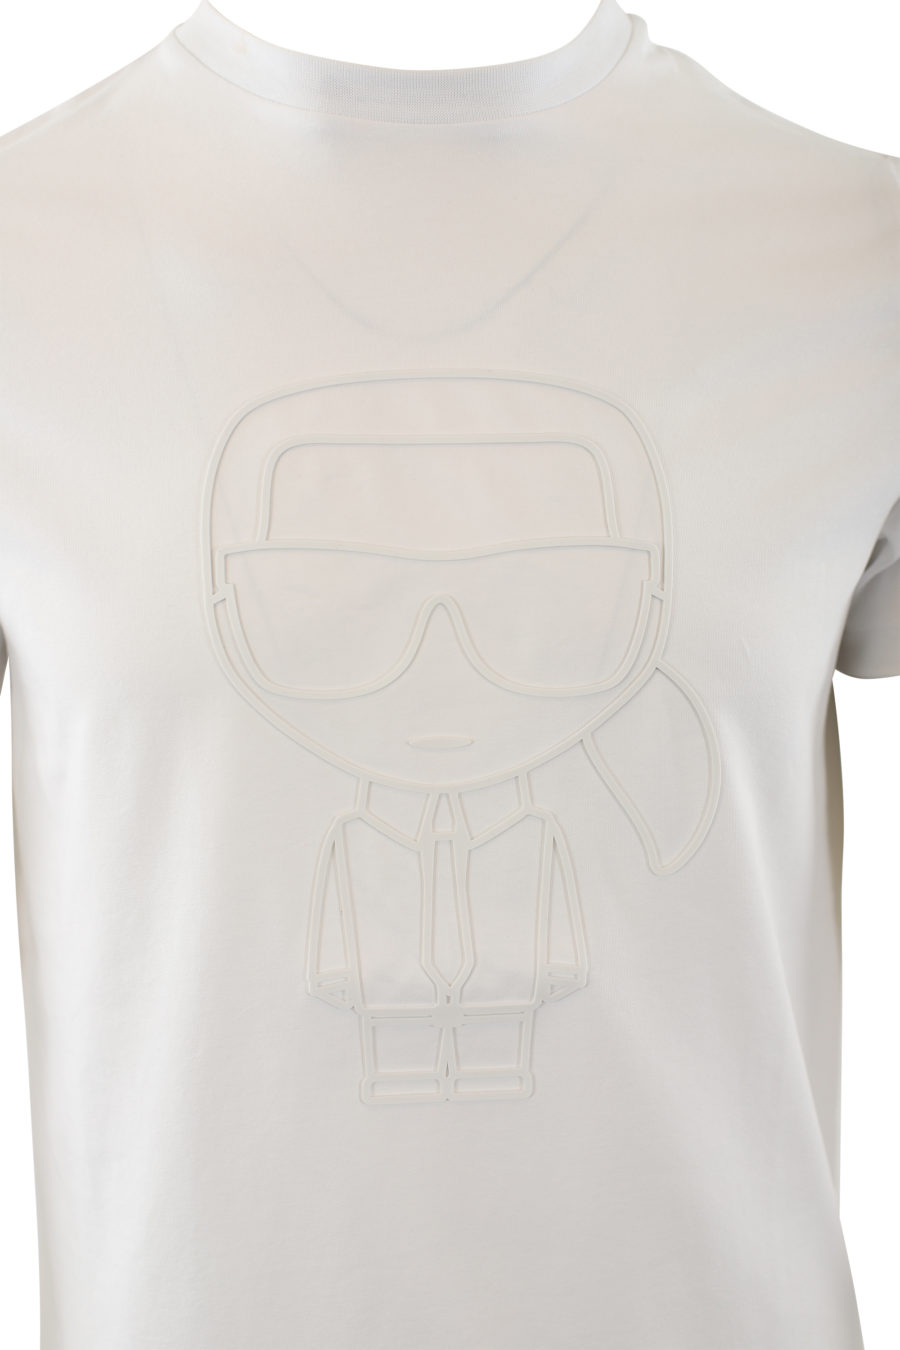 Camiseta blanca con logo de goma blanco - IMG 6529